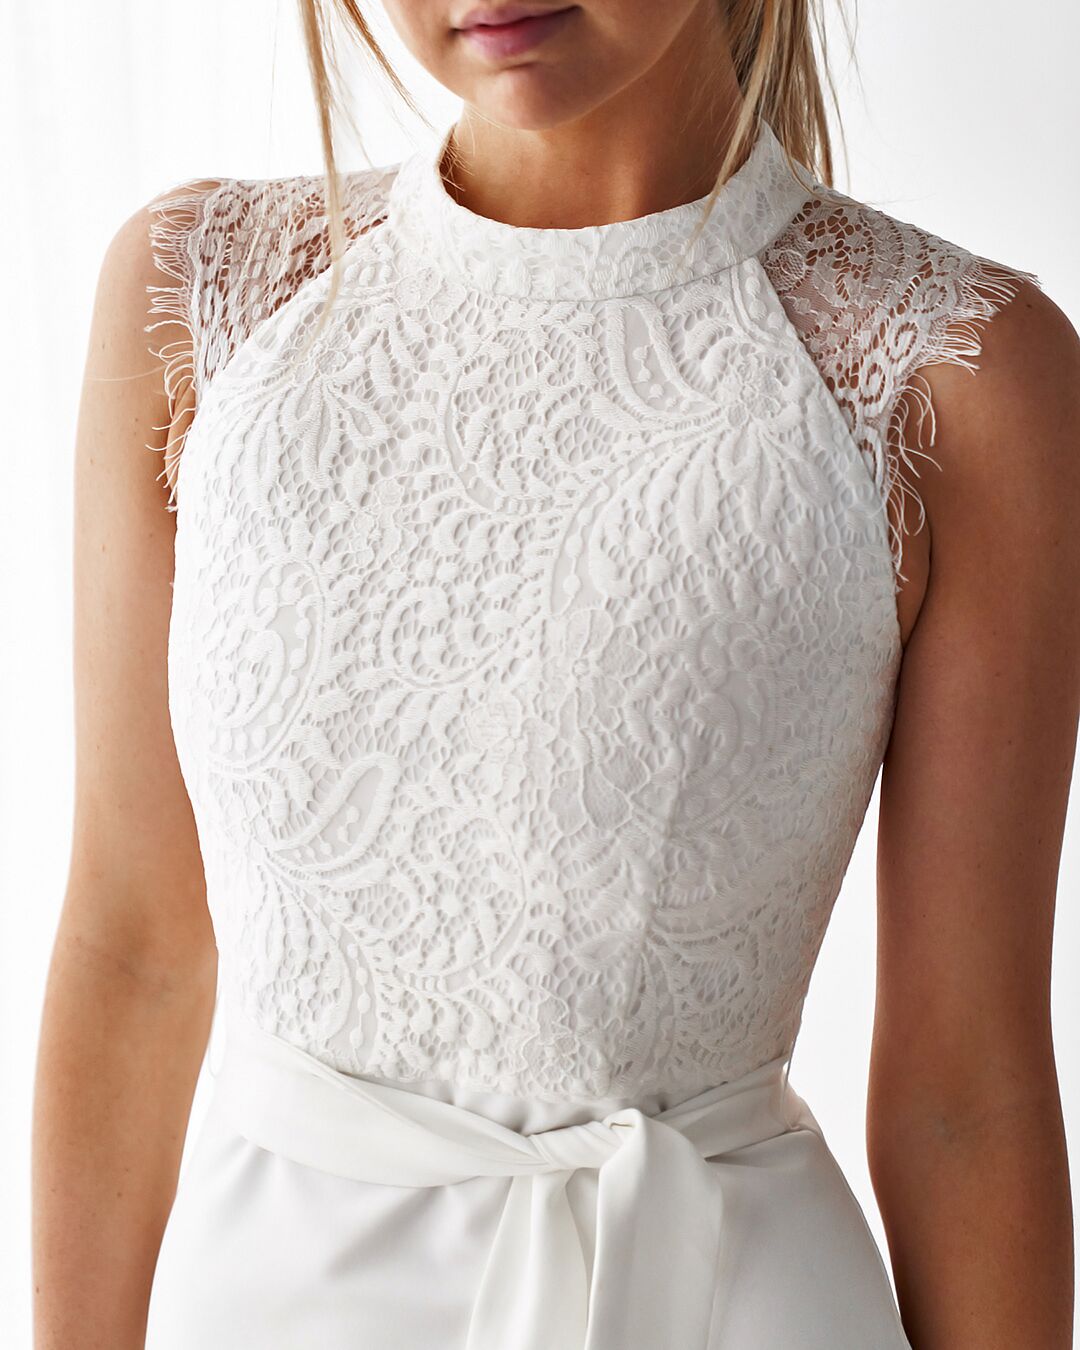 lace sleeveless dress